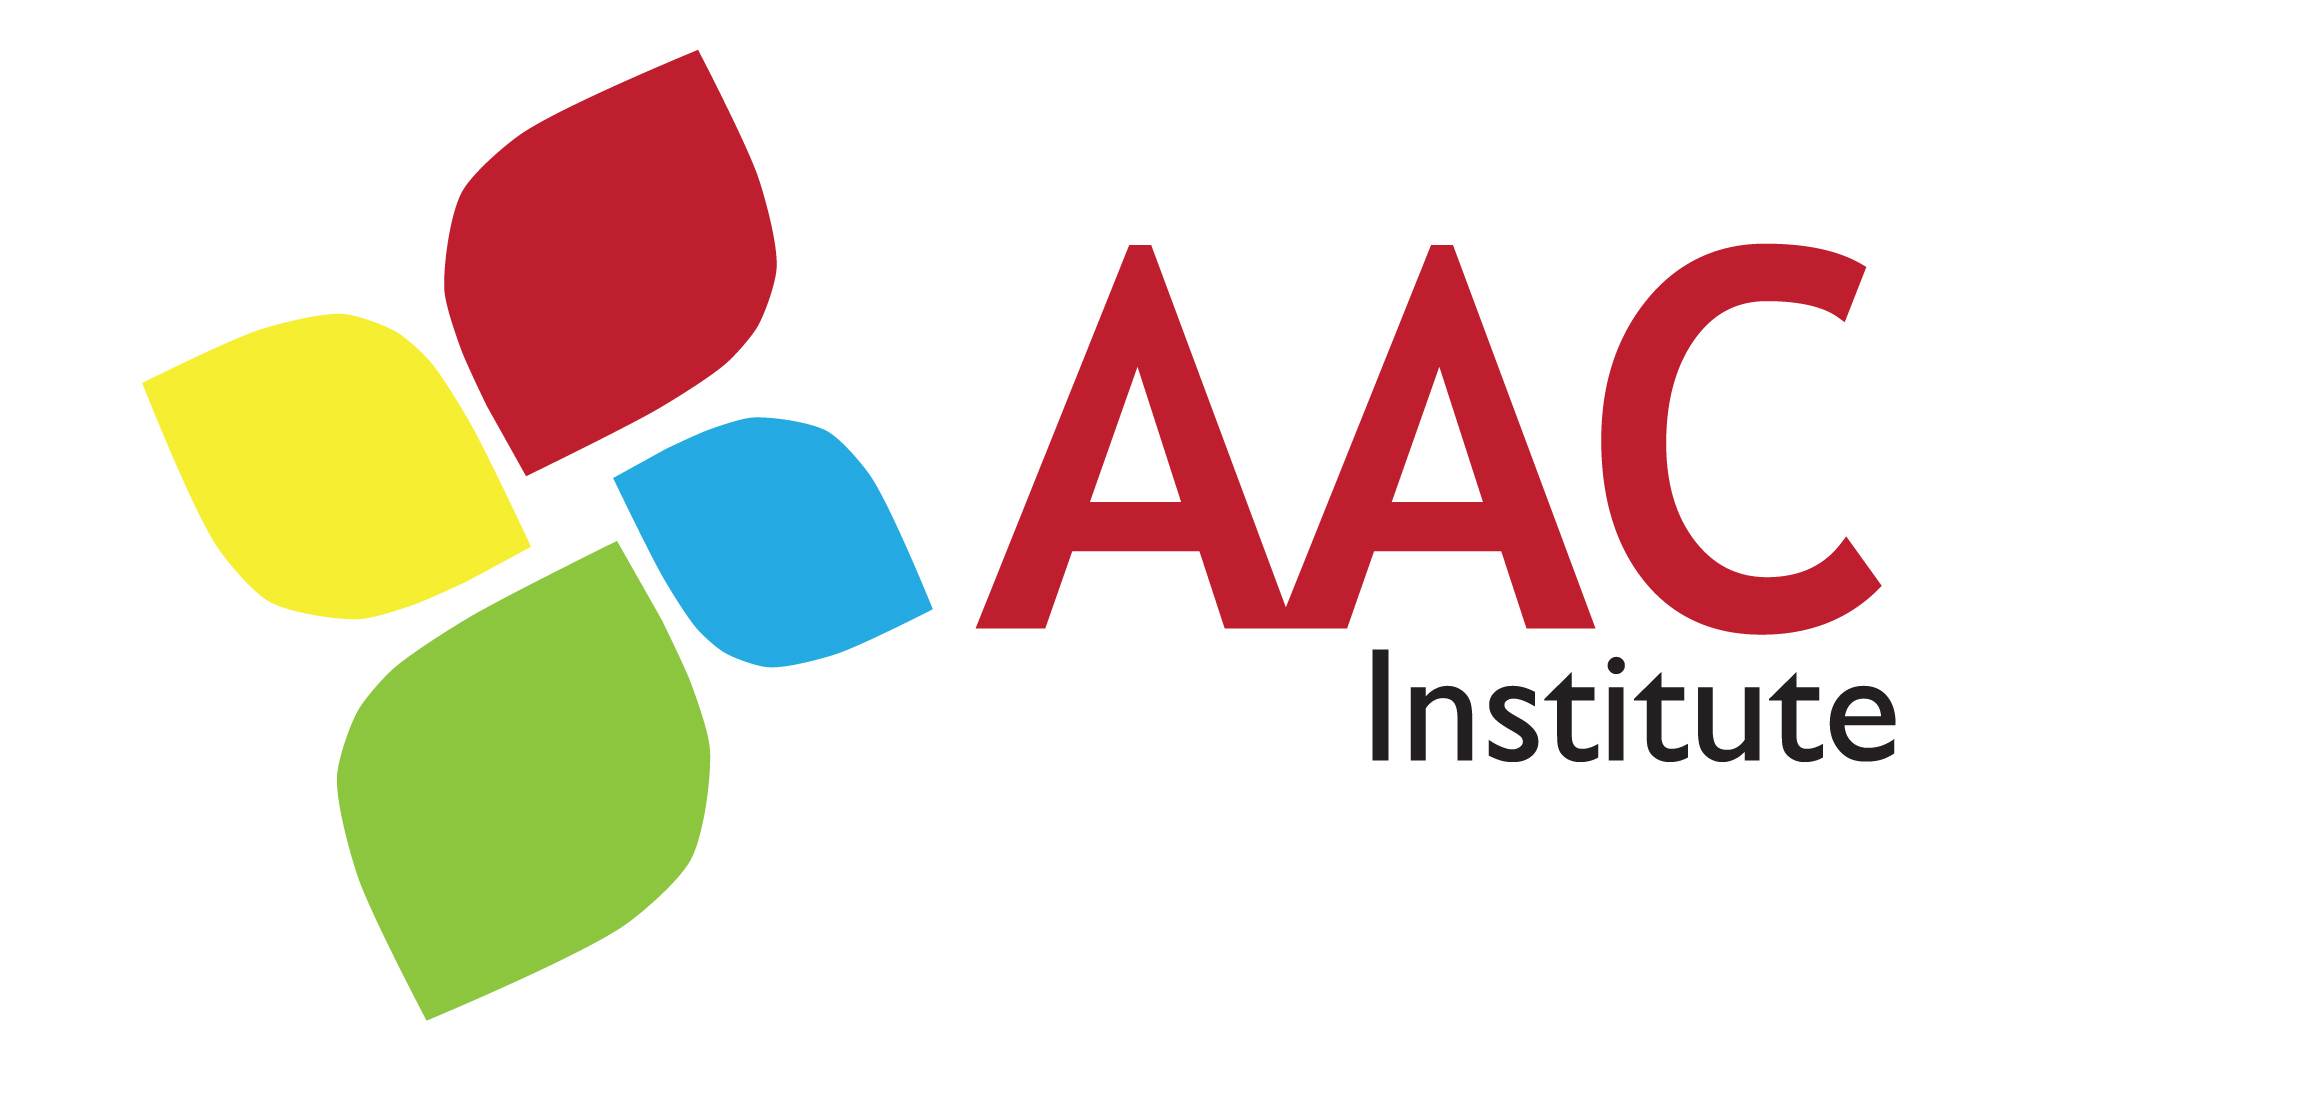 AAC Institute